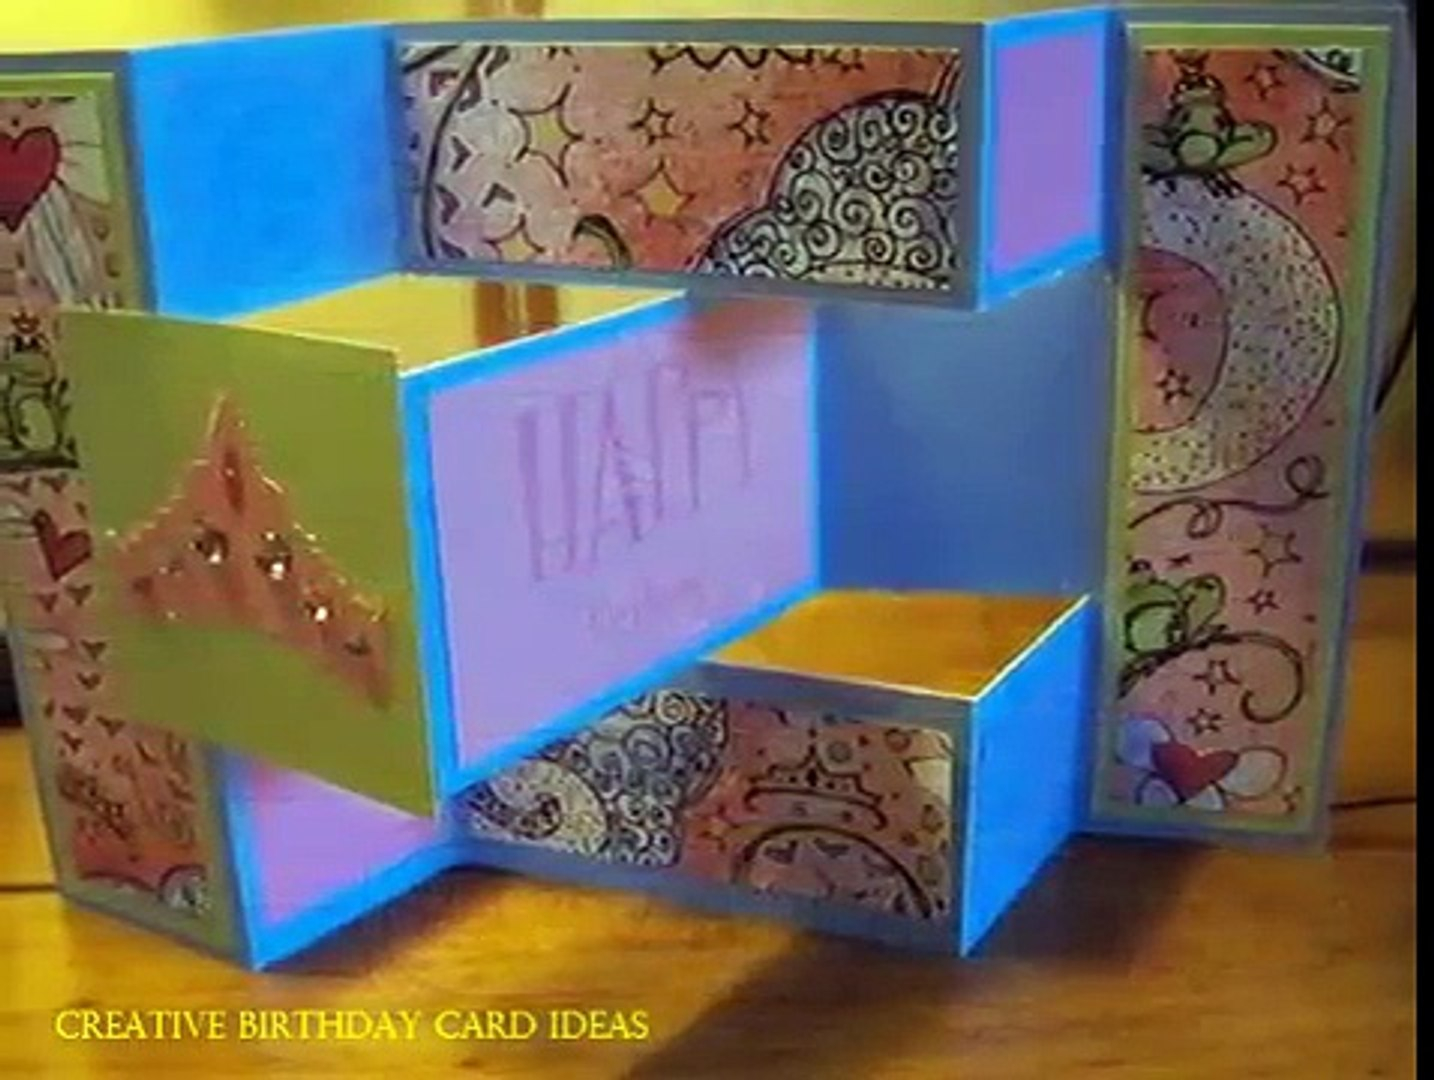 Creative Ideas For A Birthday Card Creative Birthday Card Ideas